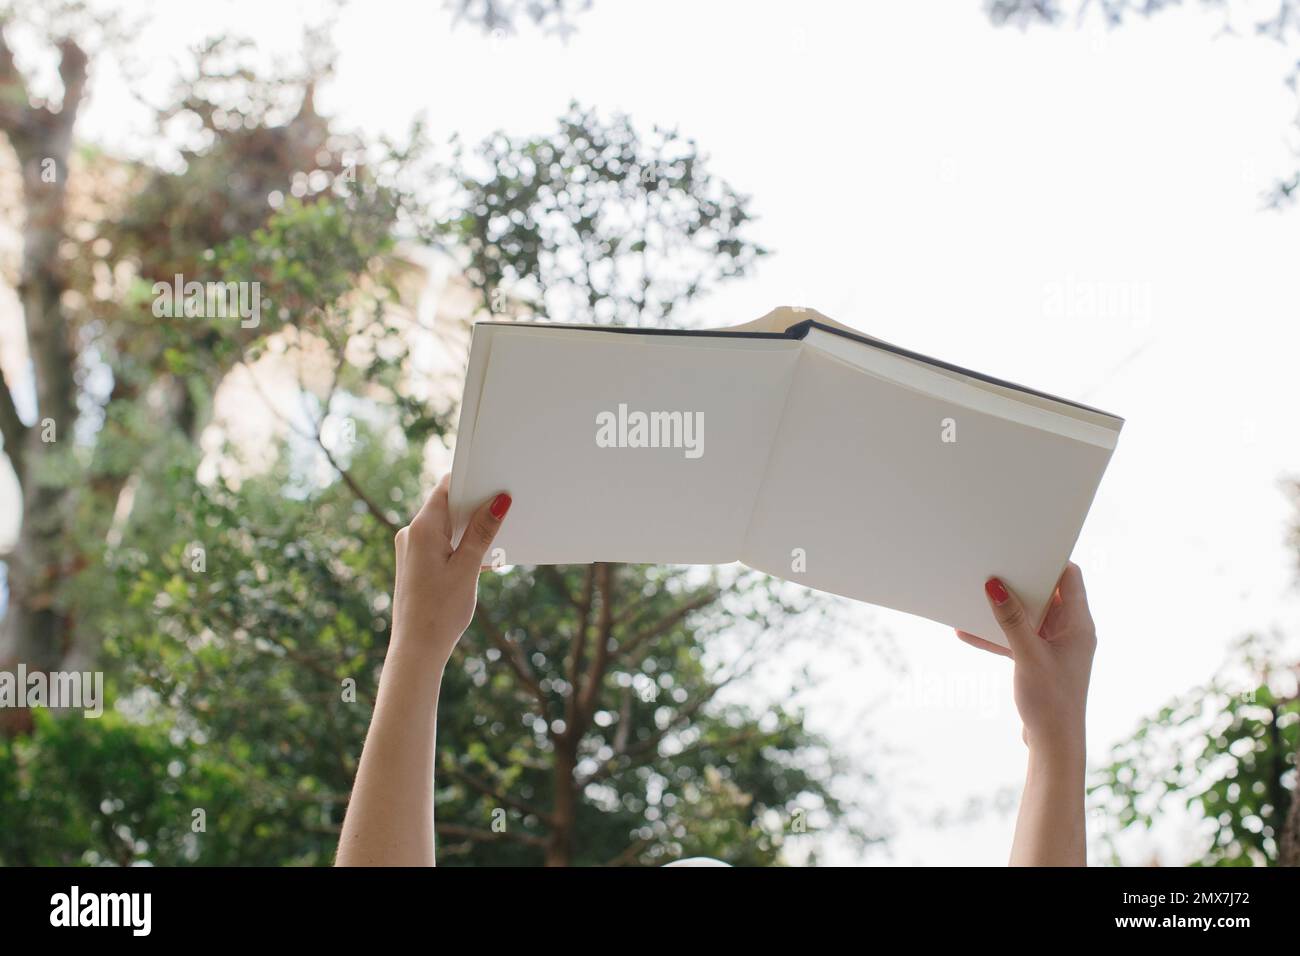 Maquette d'un magazine ou d'un livre. Les mains des femmes tiennent un livre ouvert sur fond de treetops et le ciel. Banque D'Images